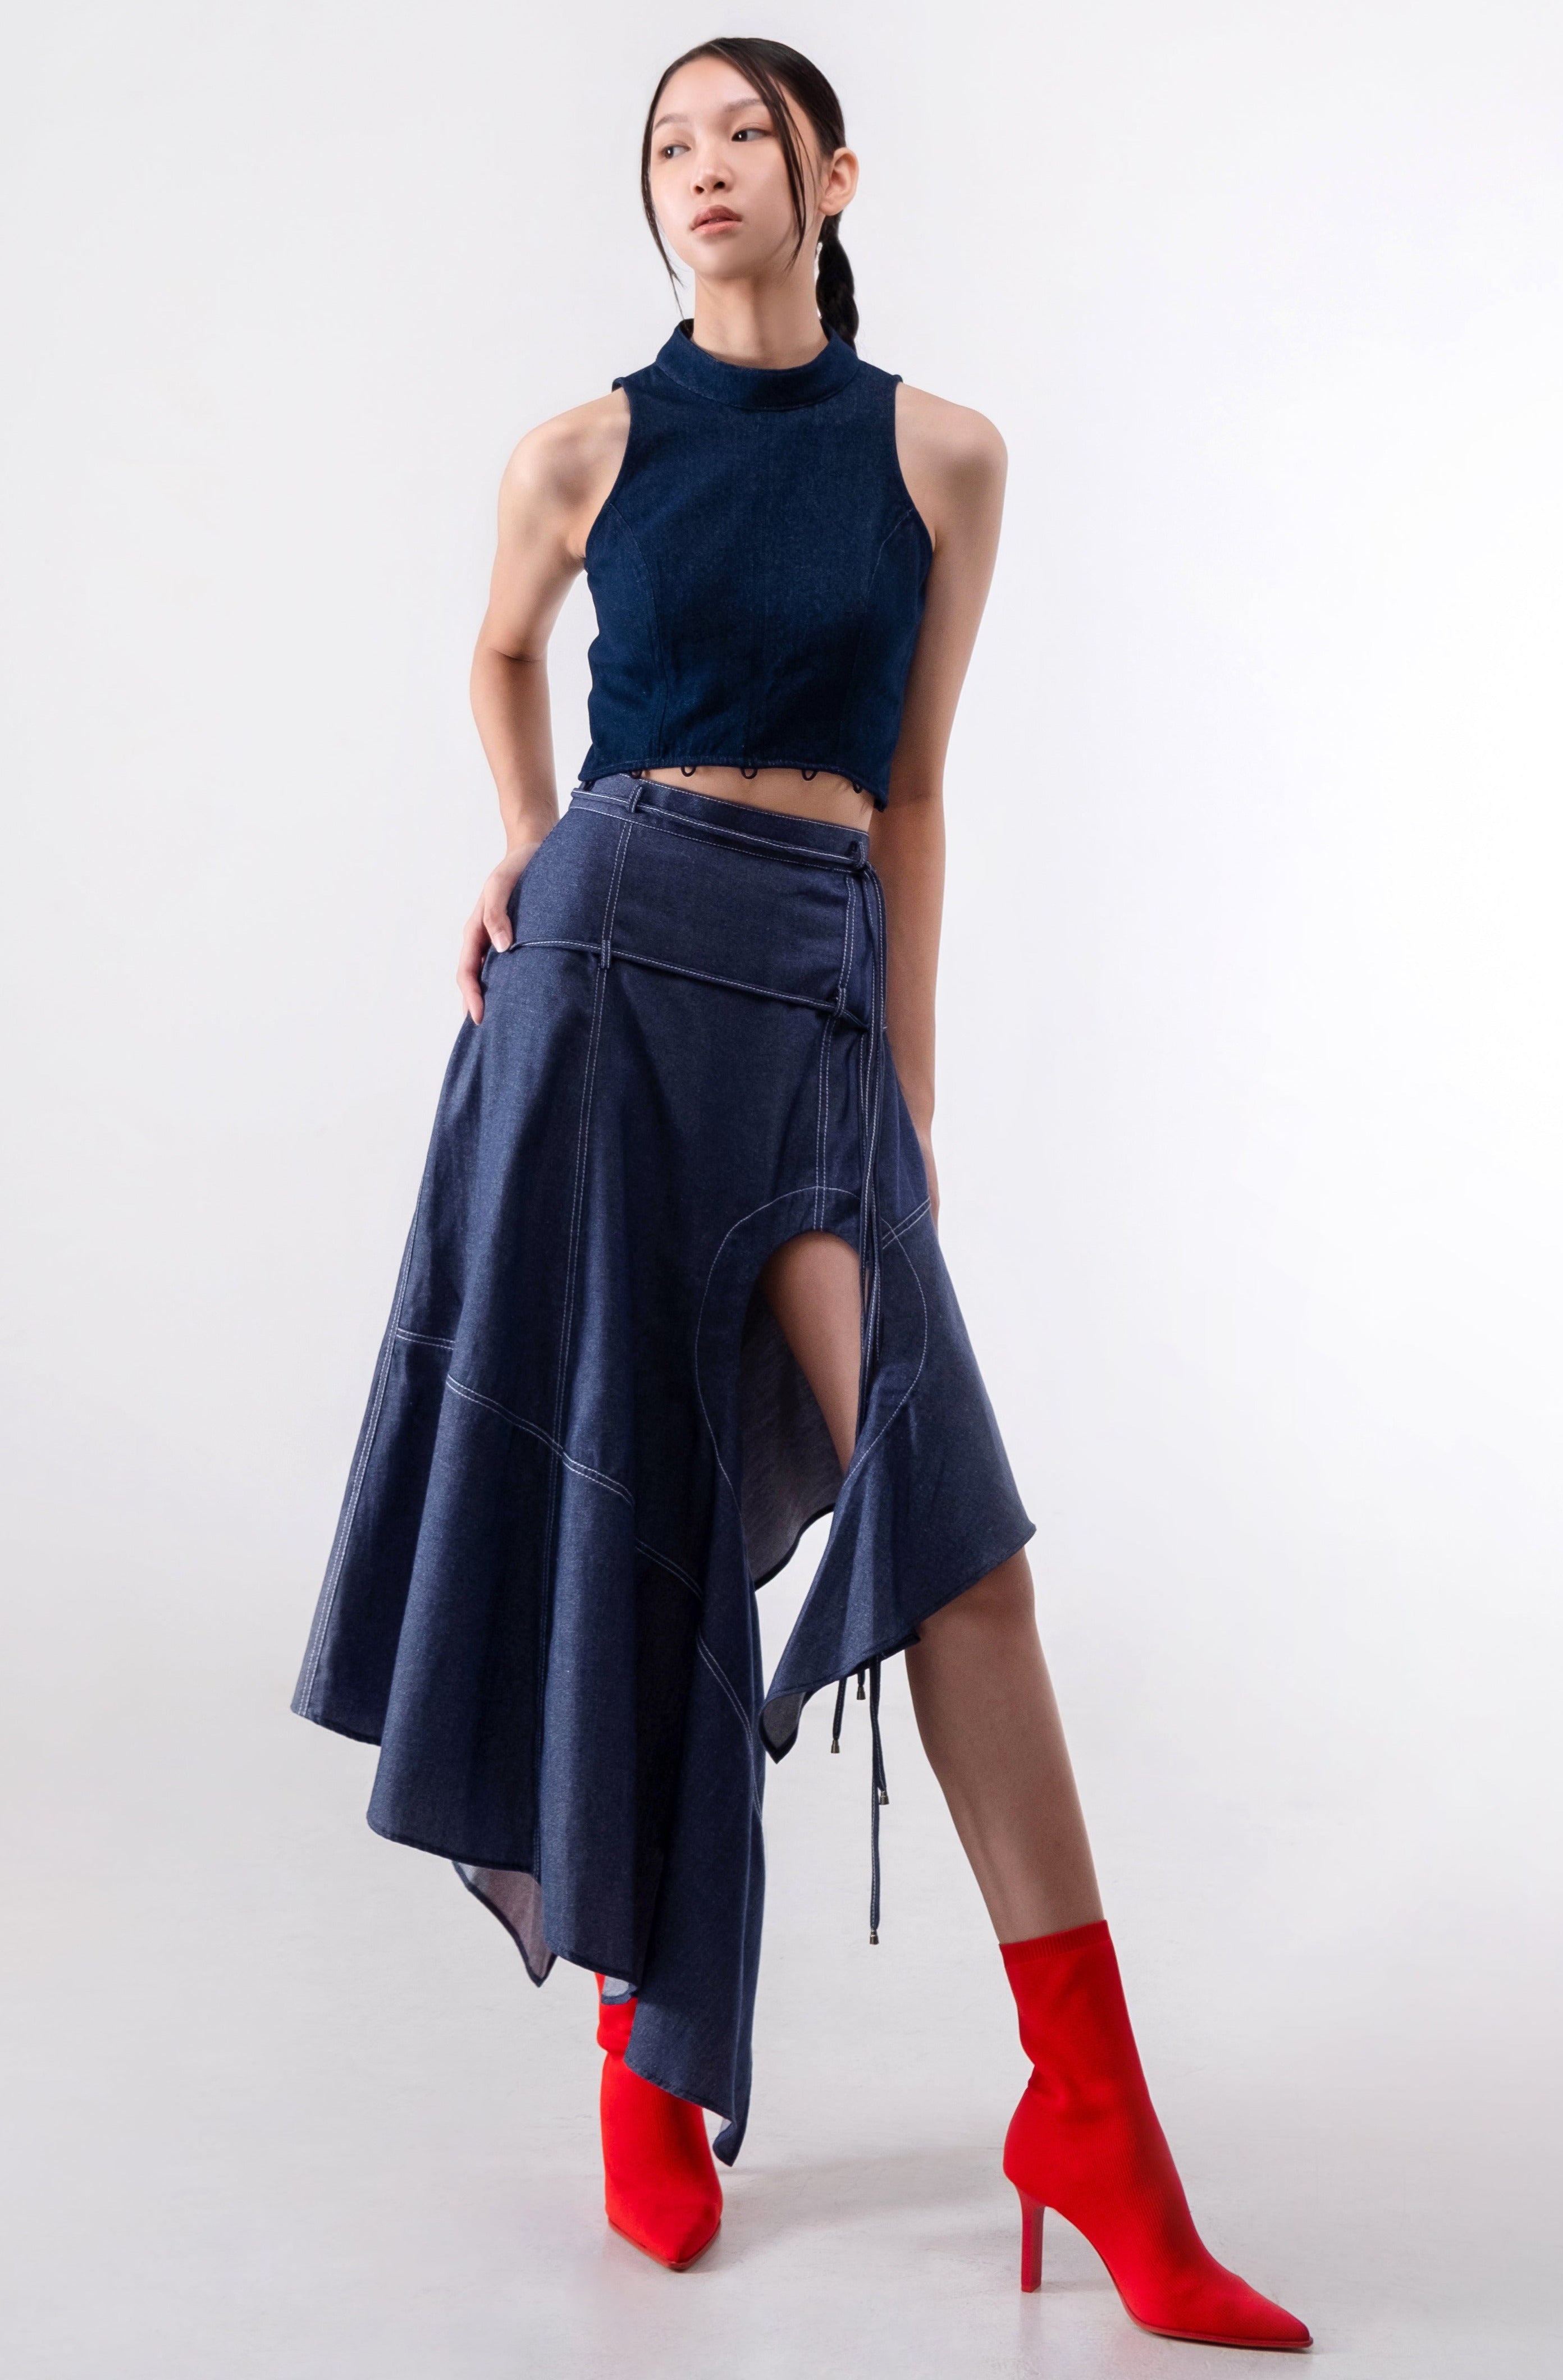 Olenka Skirt in Dark Blue Denim